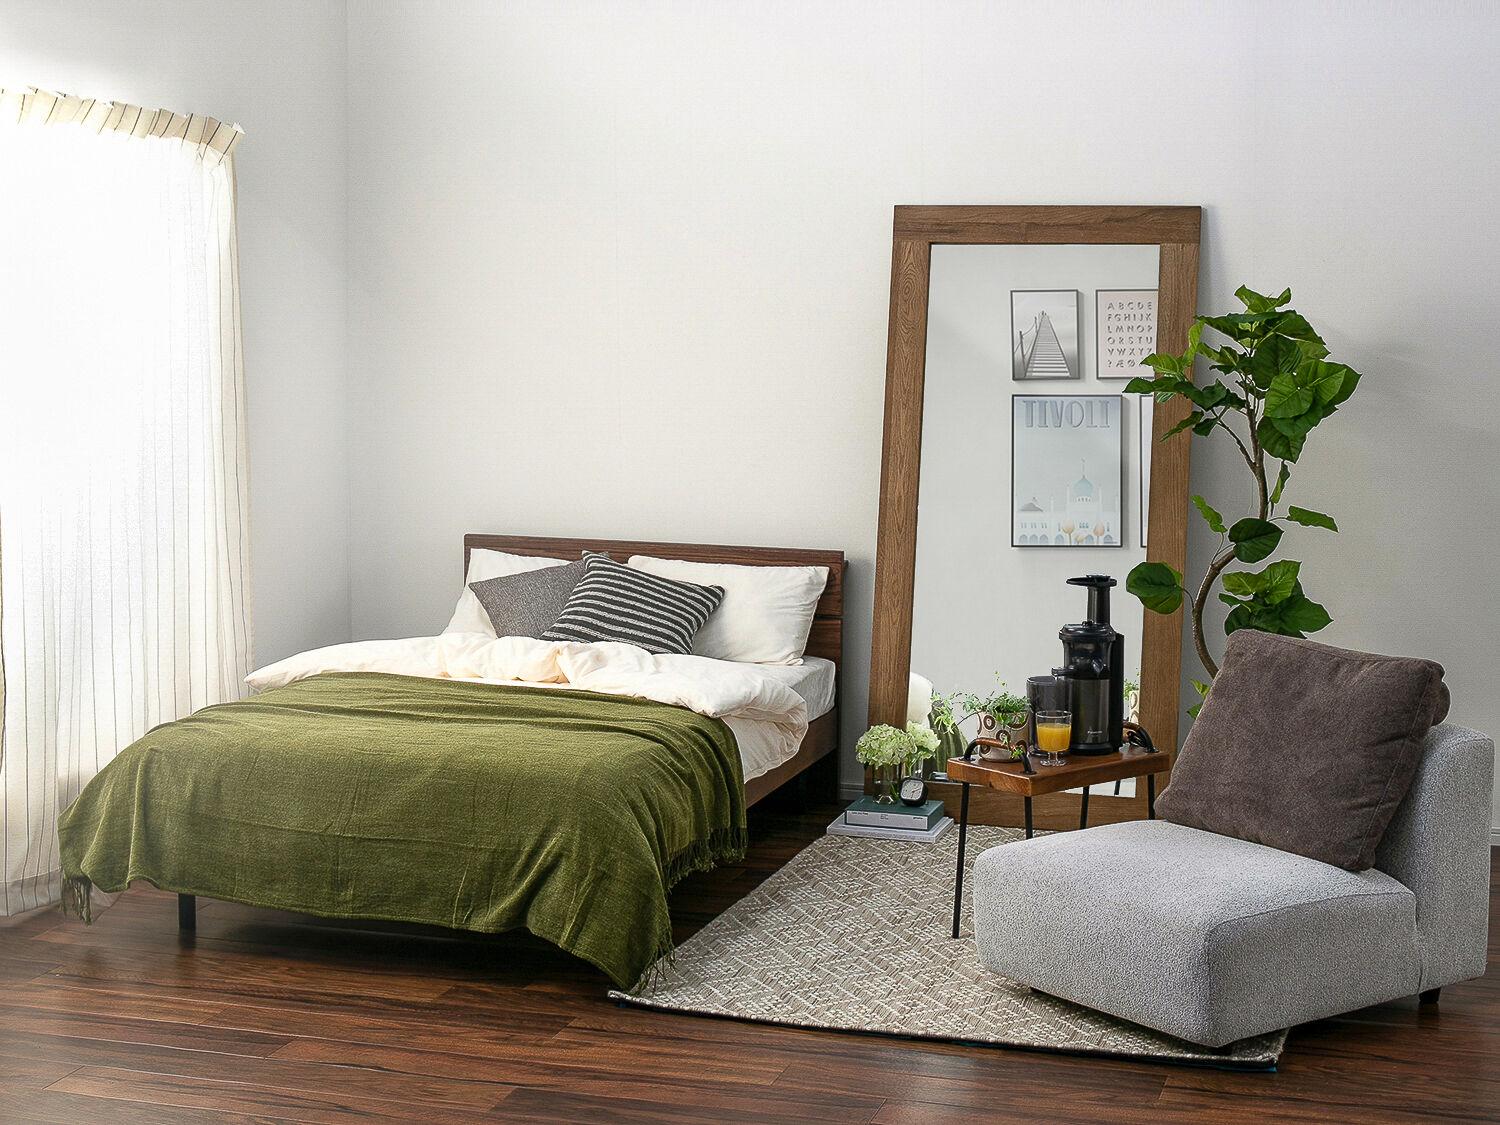 6畳のお部屋を広く見せる配置や家具